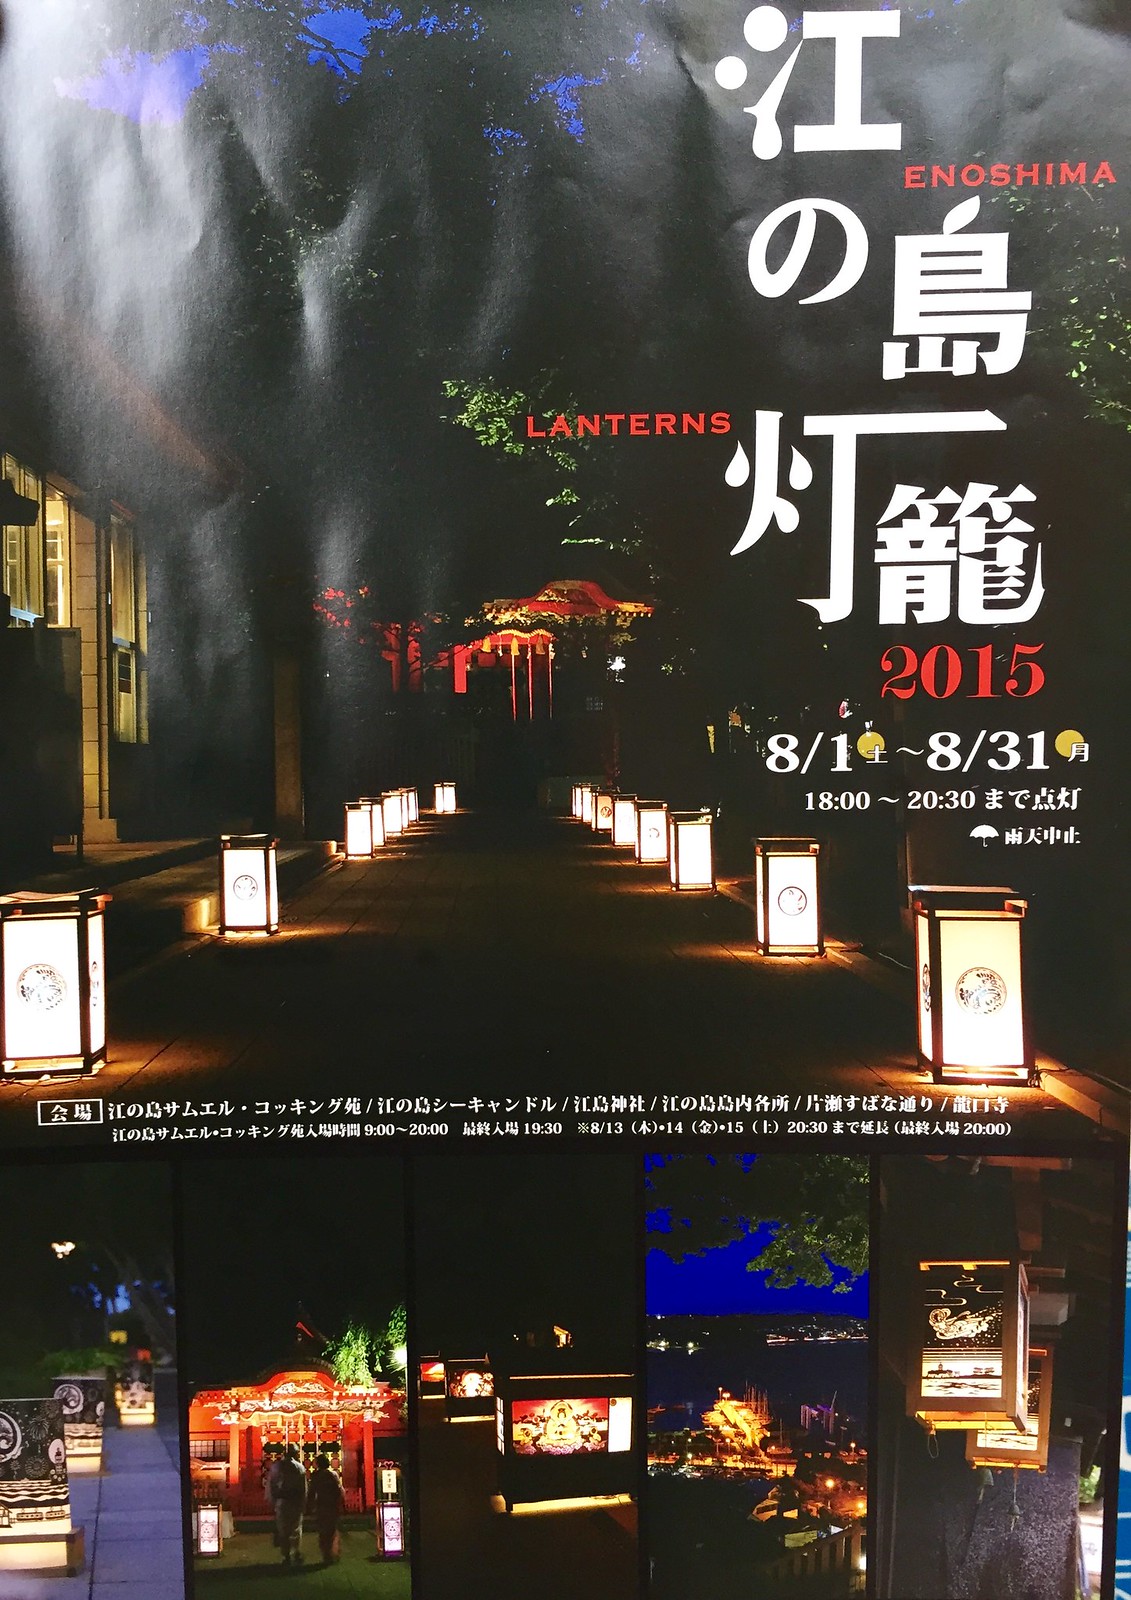 Enoshima Lanterns 2015 Poster